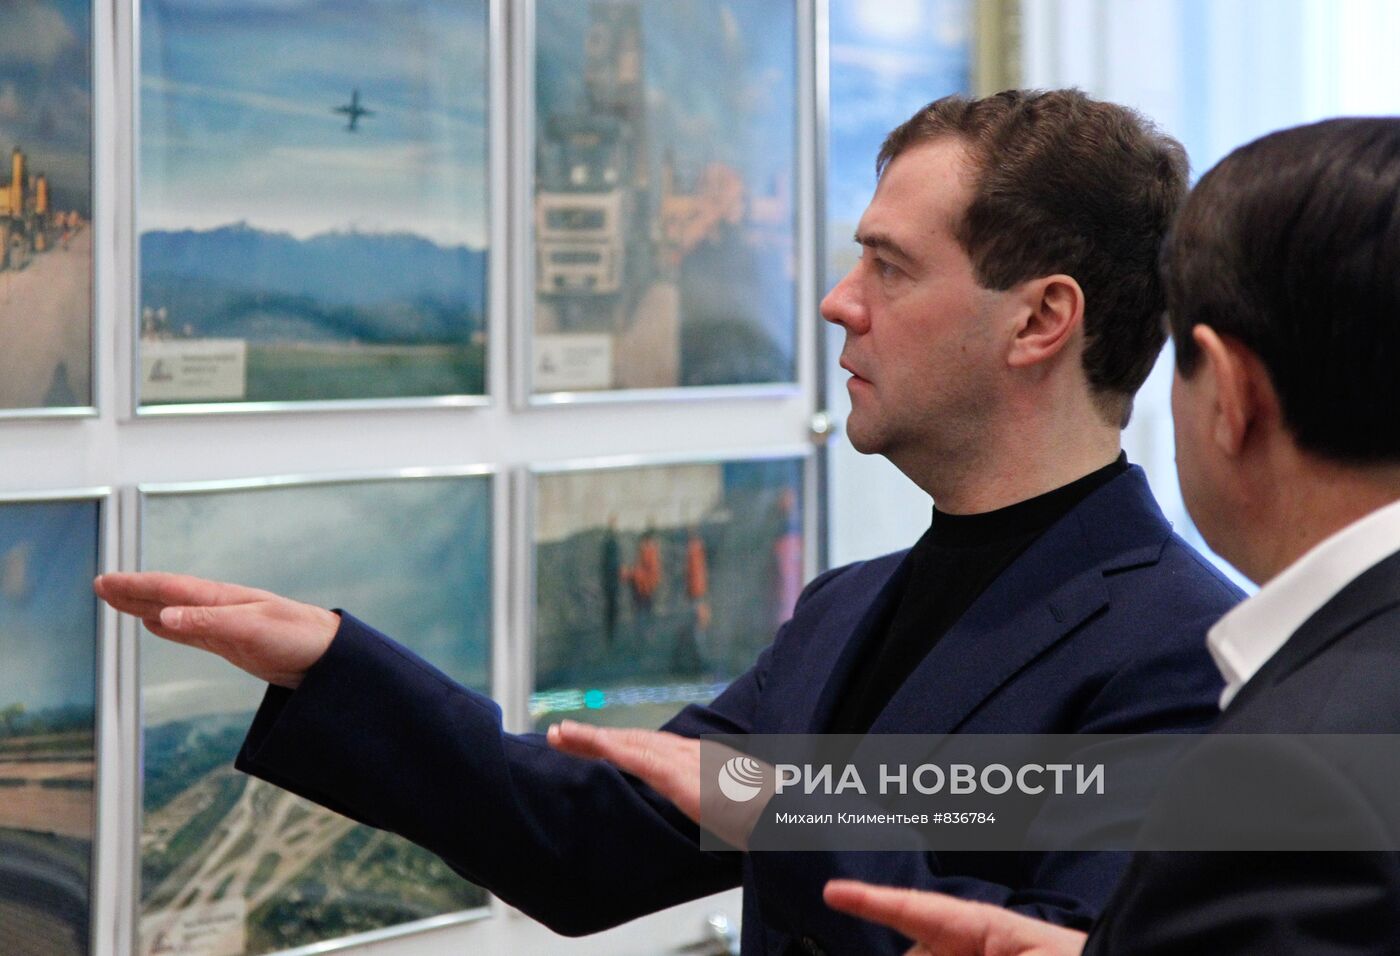 Д.Медведев осмотрел взлетно-посадочную полосу в аэропорту Адлера